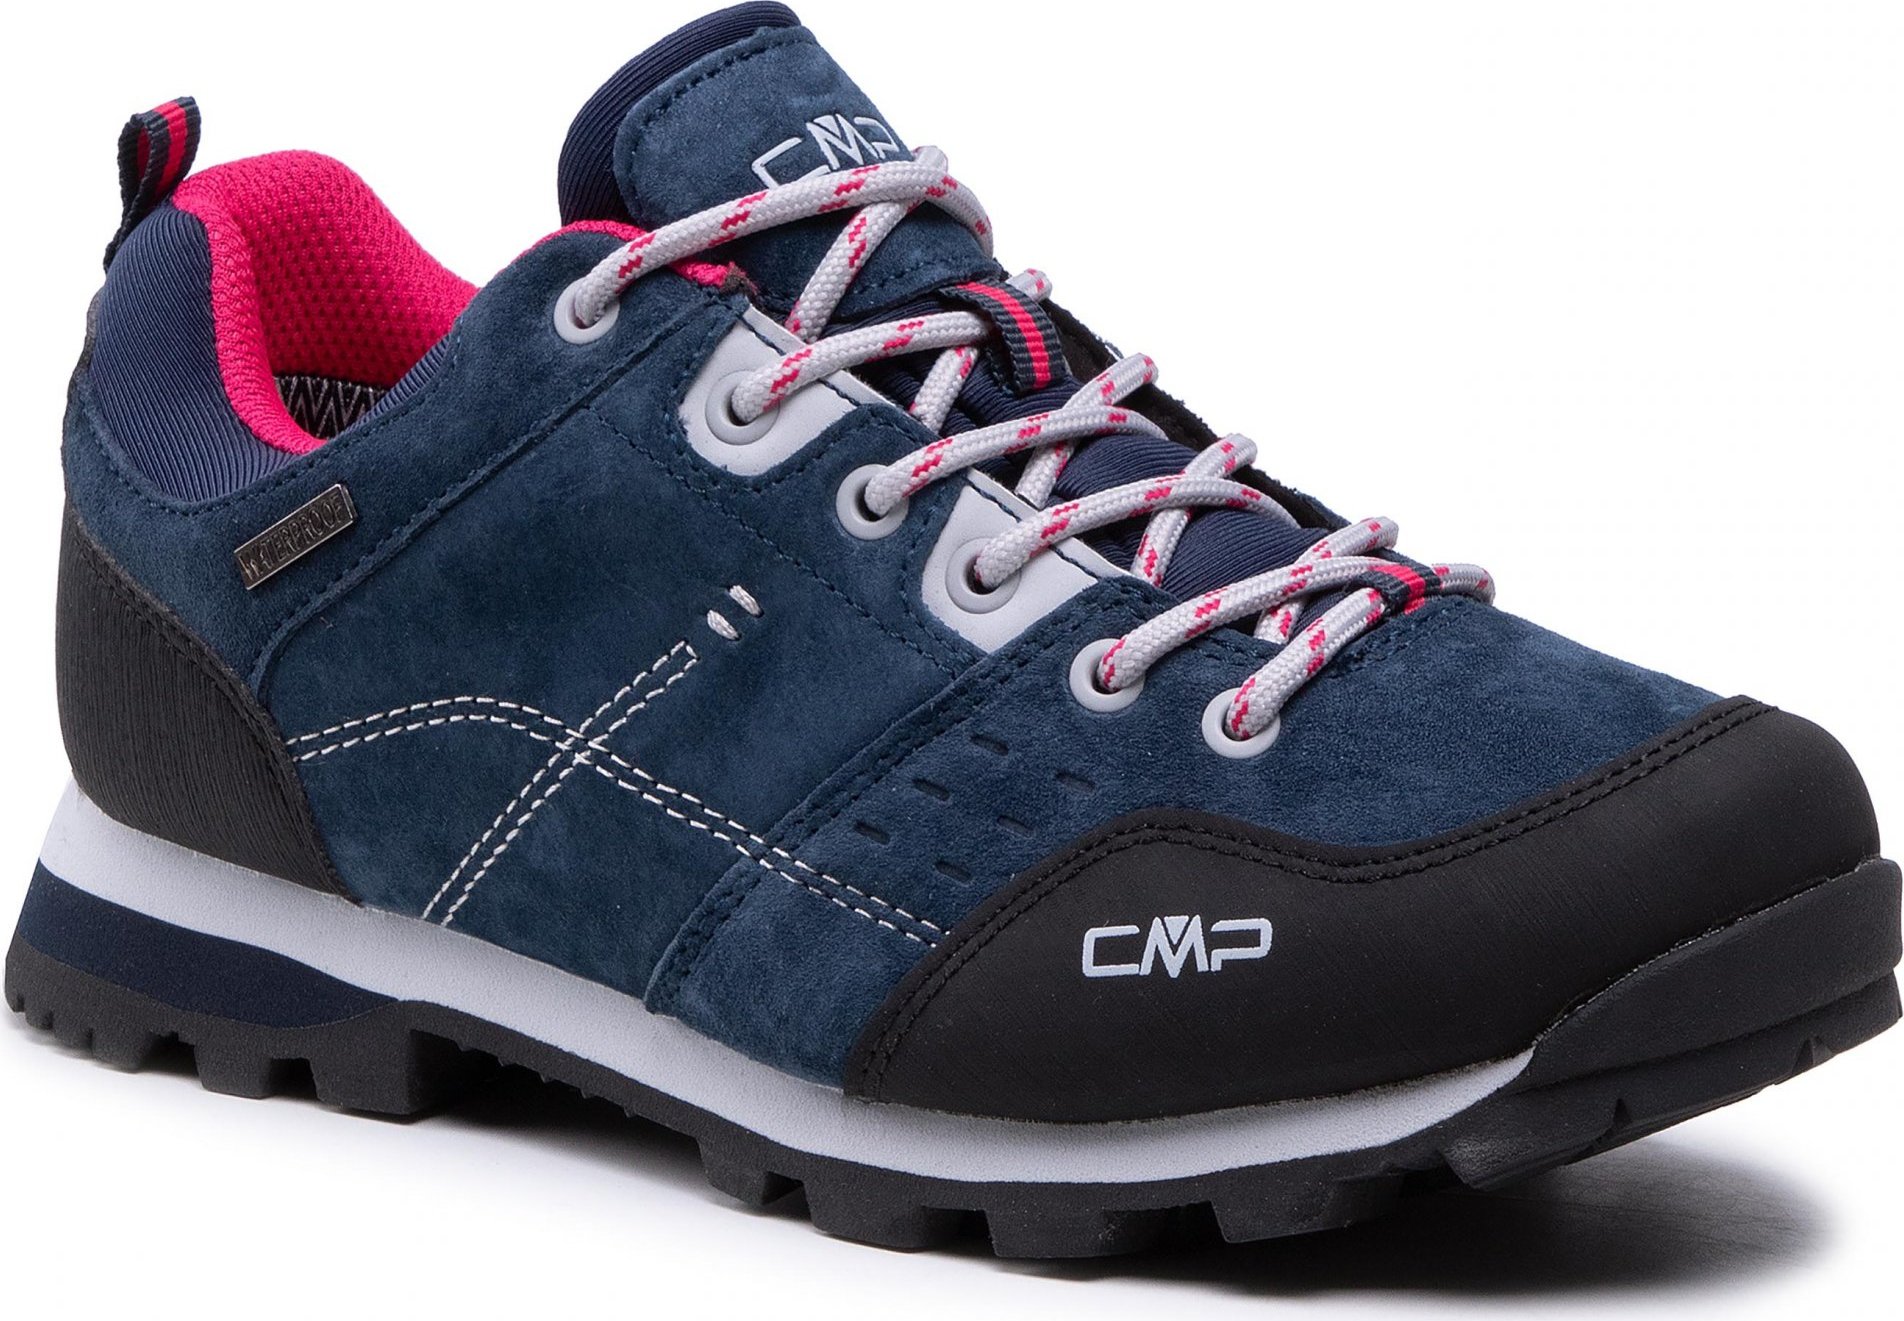 CMP Alcor Low Wmn Trekking Shoes Wp 39Q4896